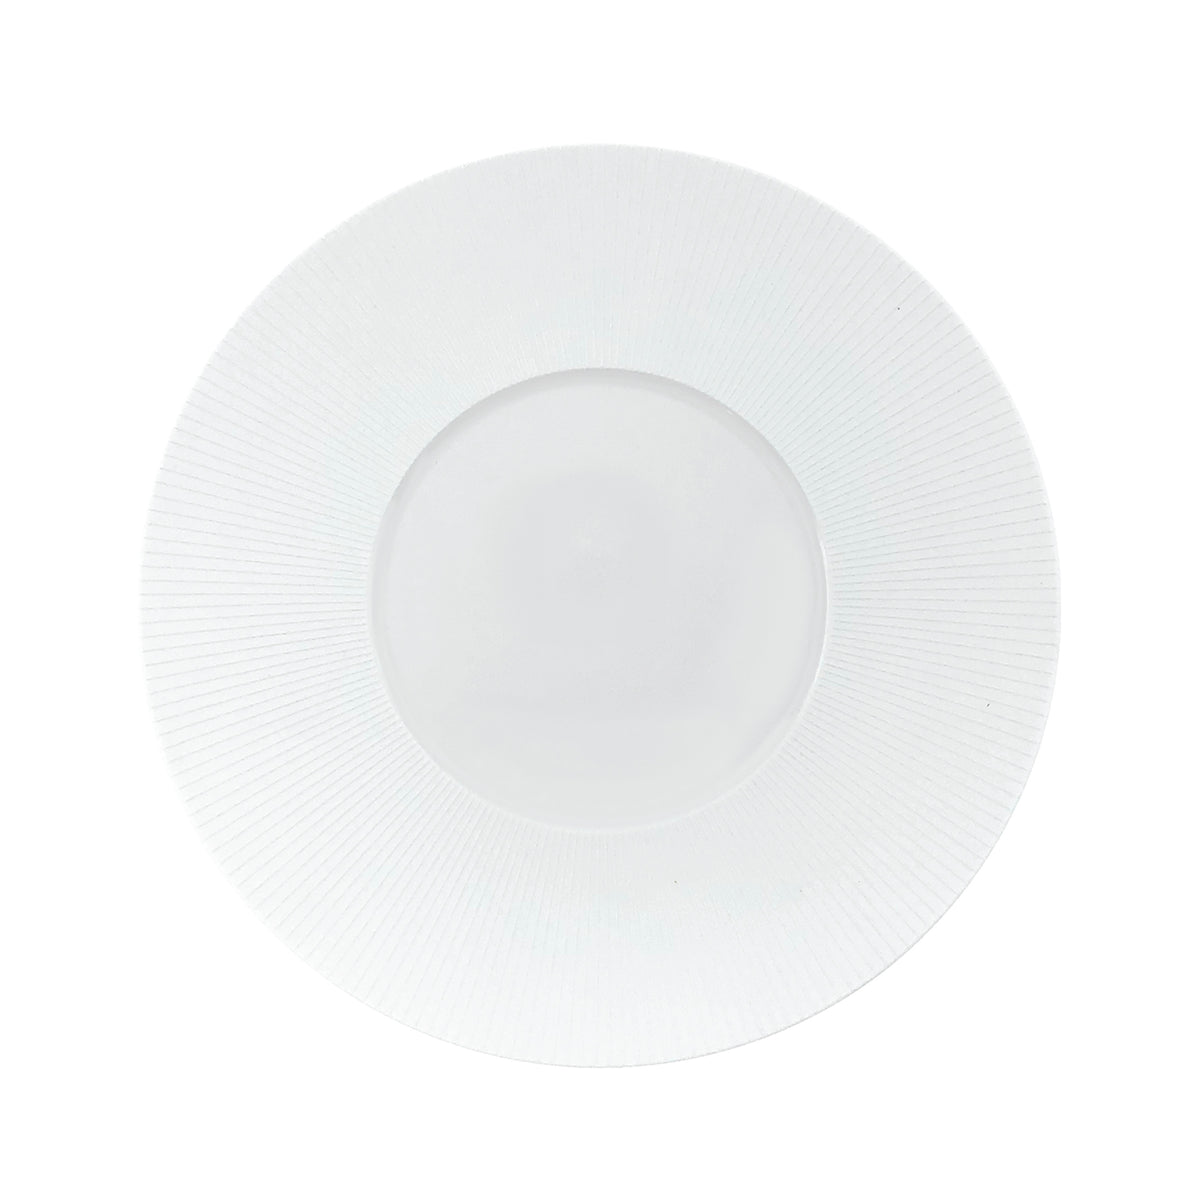 BOLERO Satin White - Dinner plate